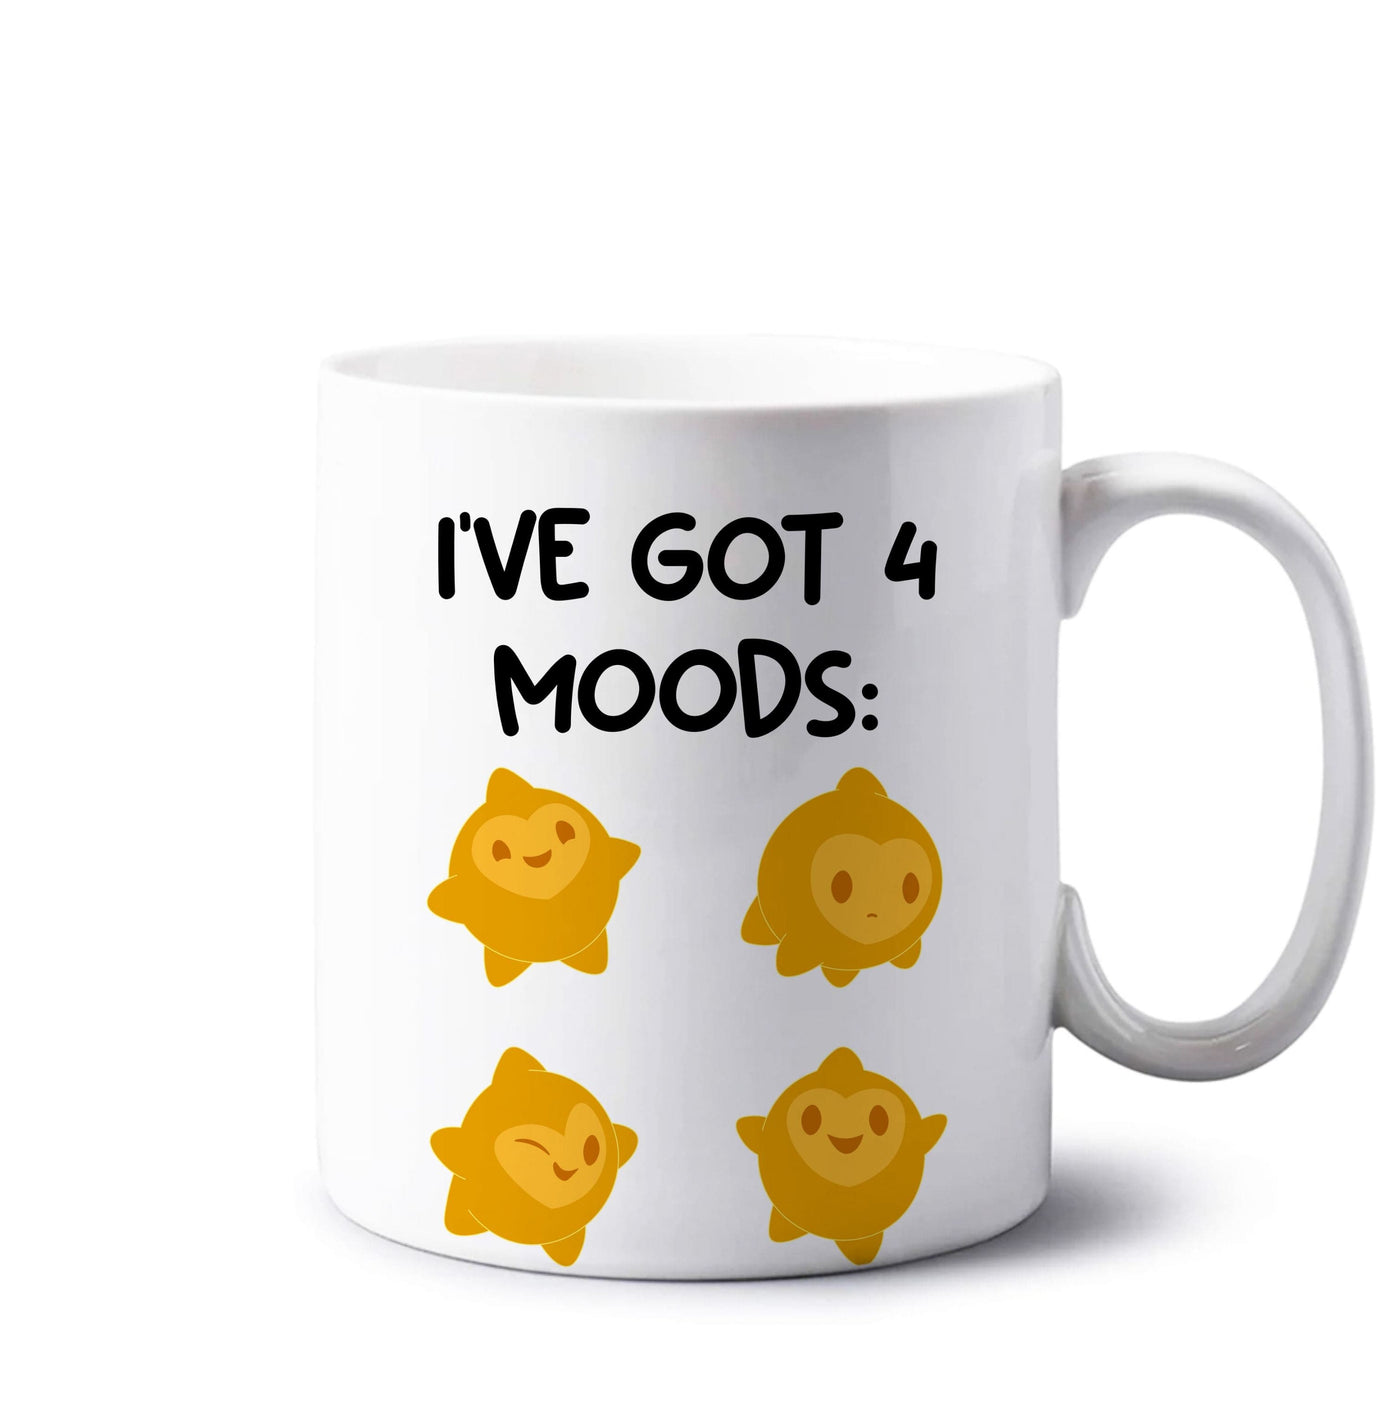 4 Moods - Wish Mug